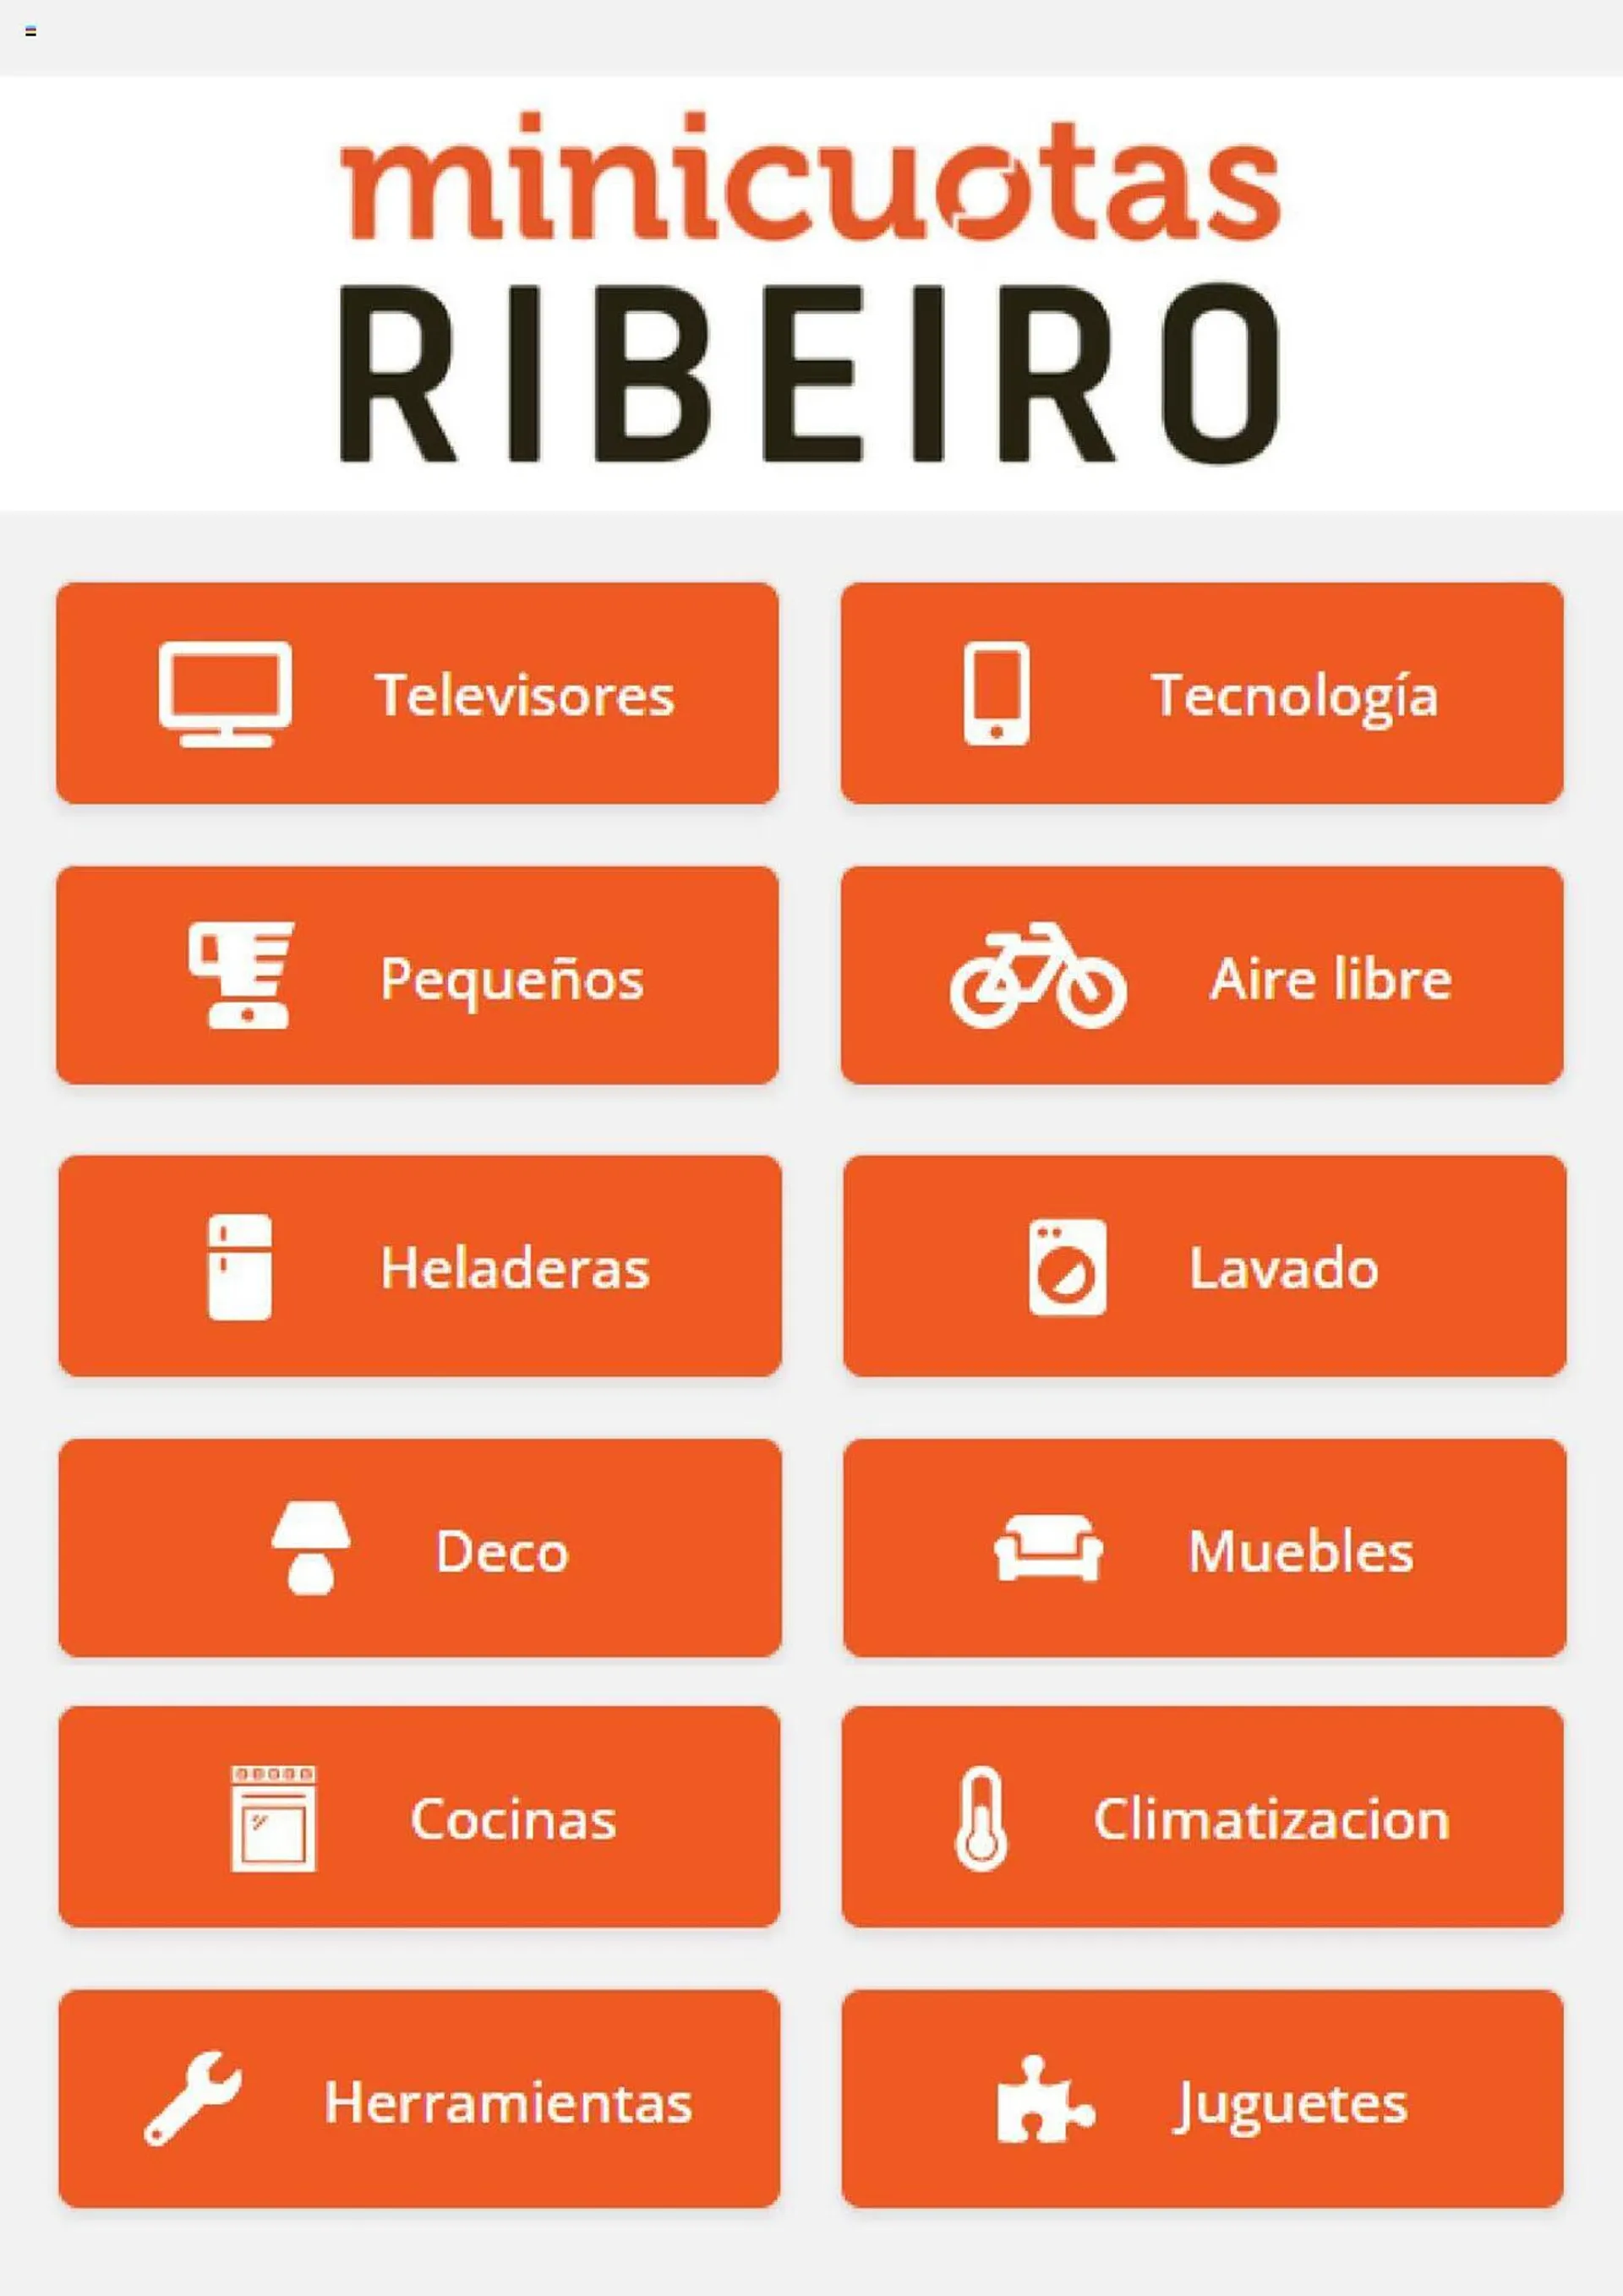 Catálogo Ribeiro - 1